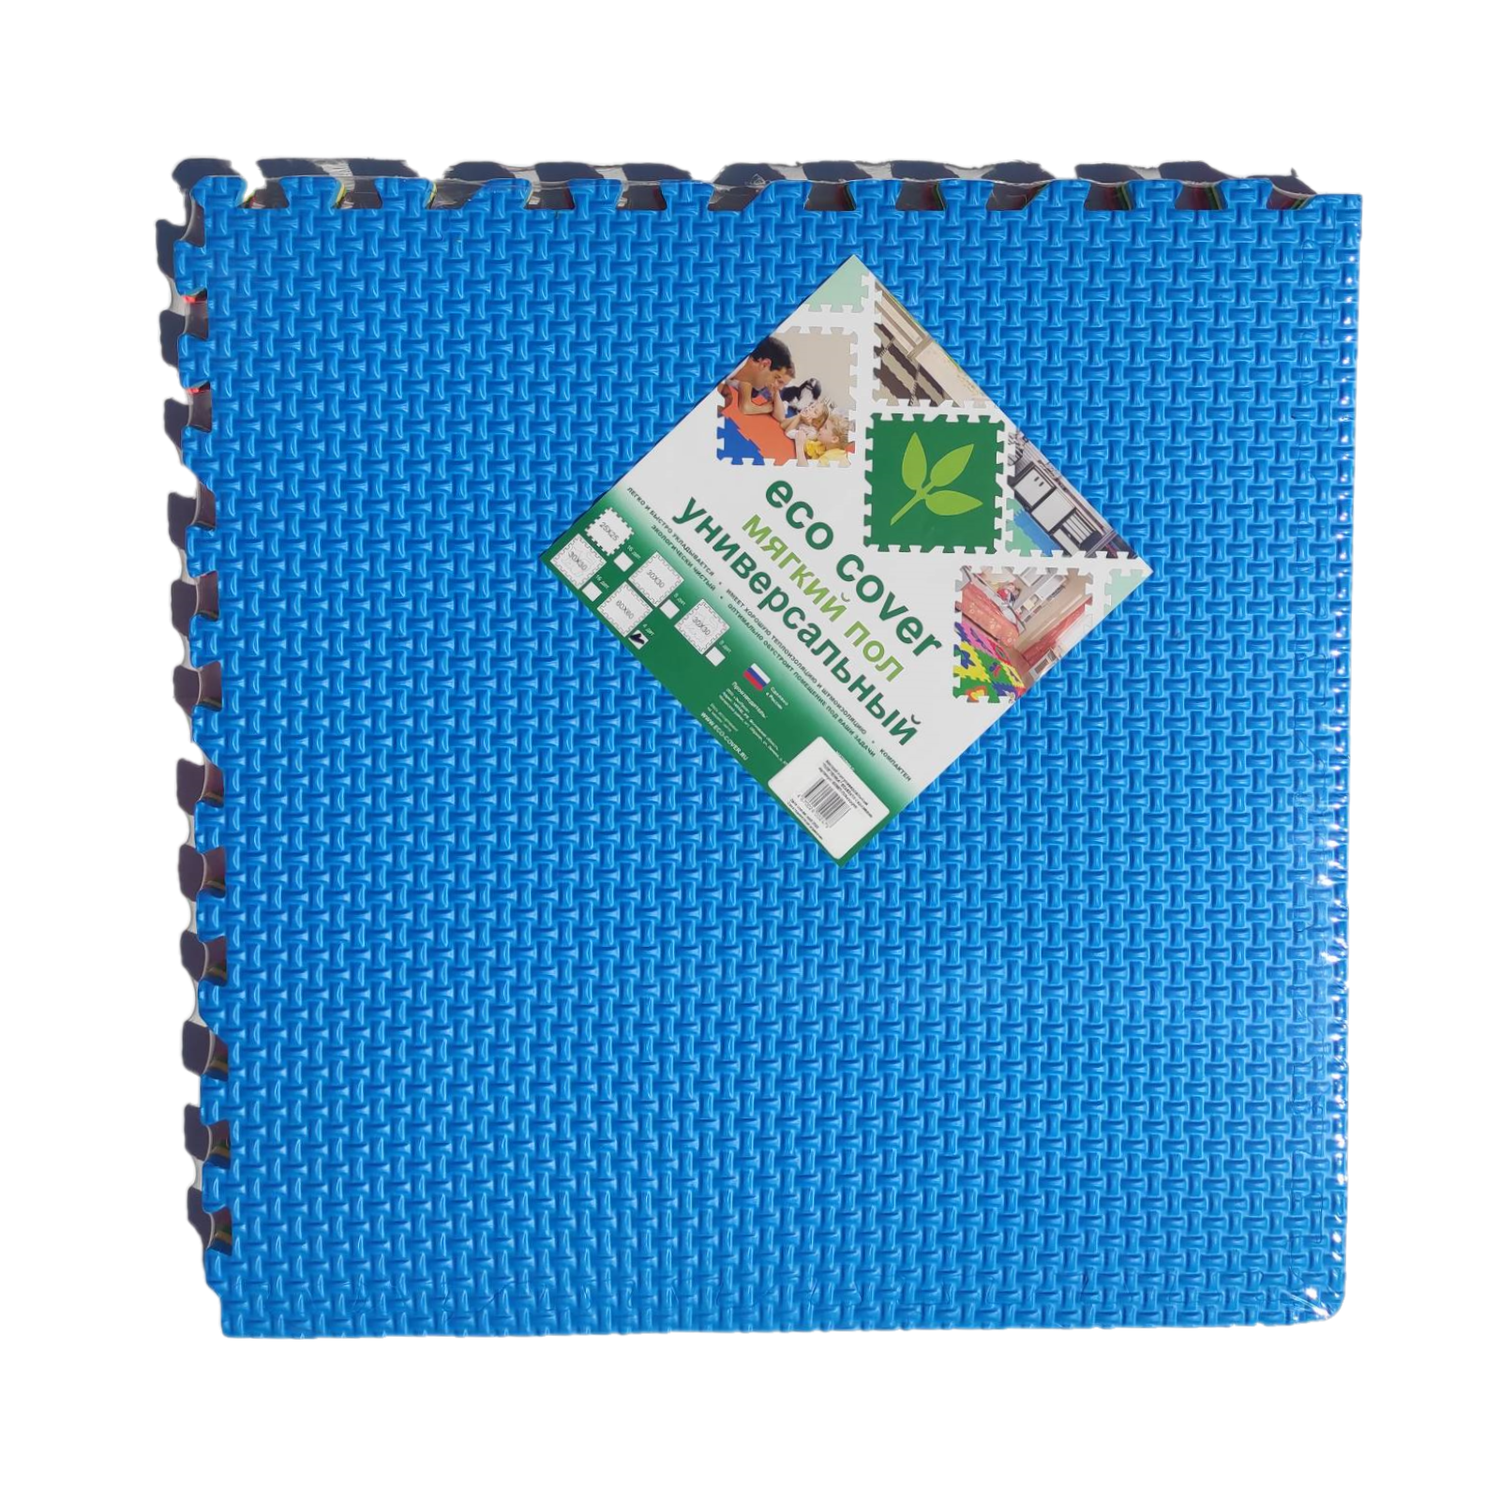 Развивающий детский коврик Eco cover игровой мягкий пол для ползания Плетенка 60х60 см. Ассорти 4 детали - фото 2